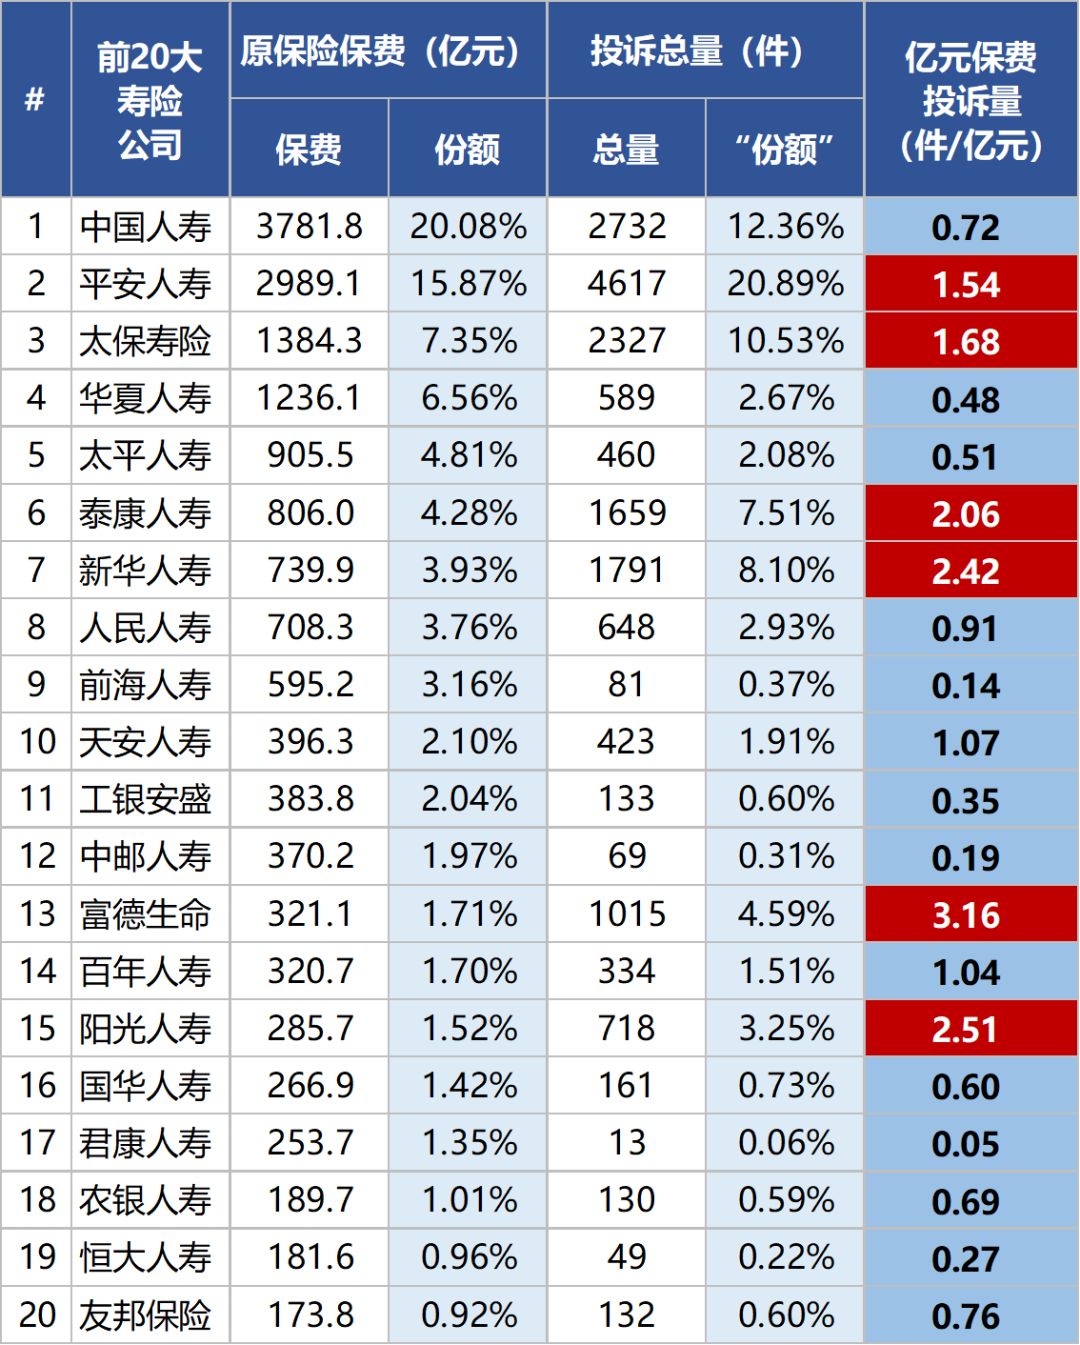 2019年保险业规模排行_中国保险业新媒体排行榜 2019年12月份